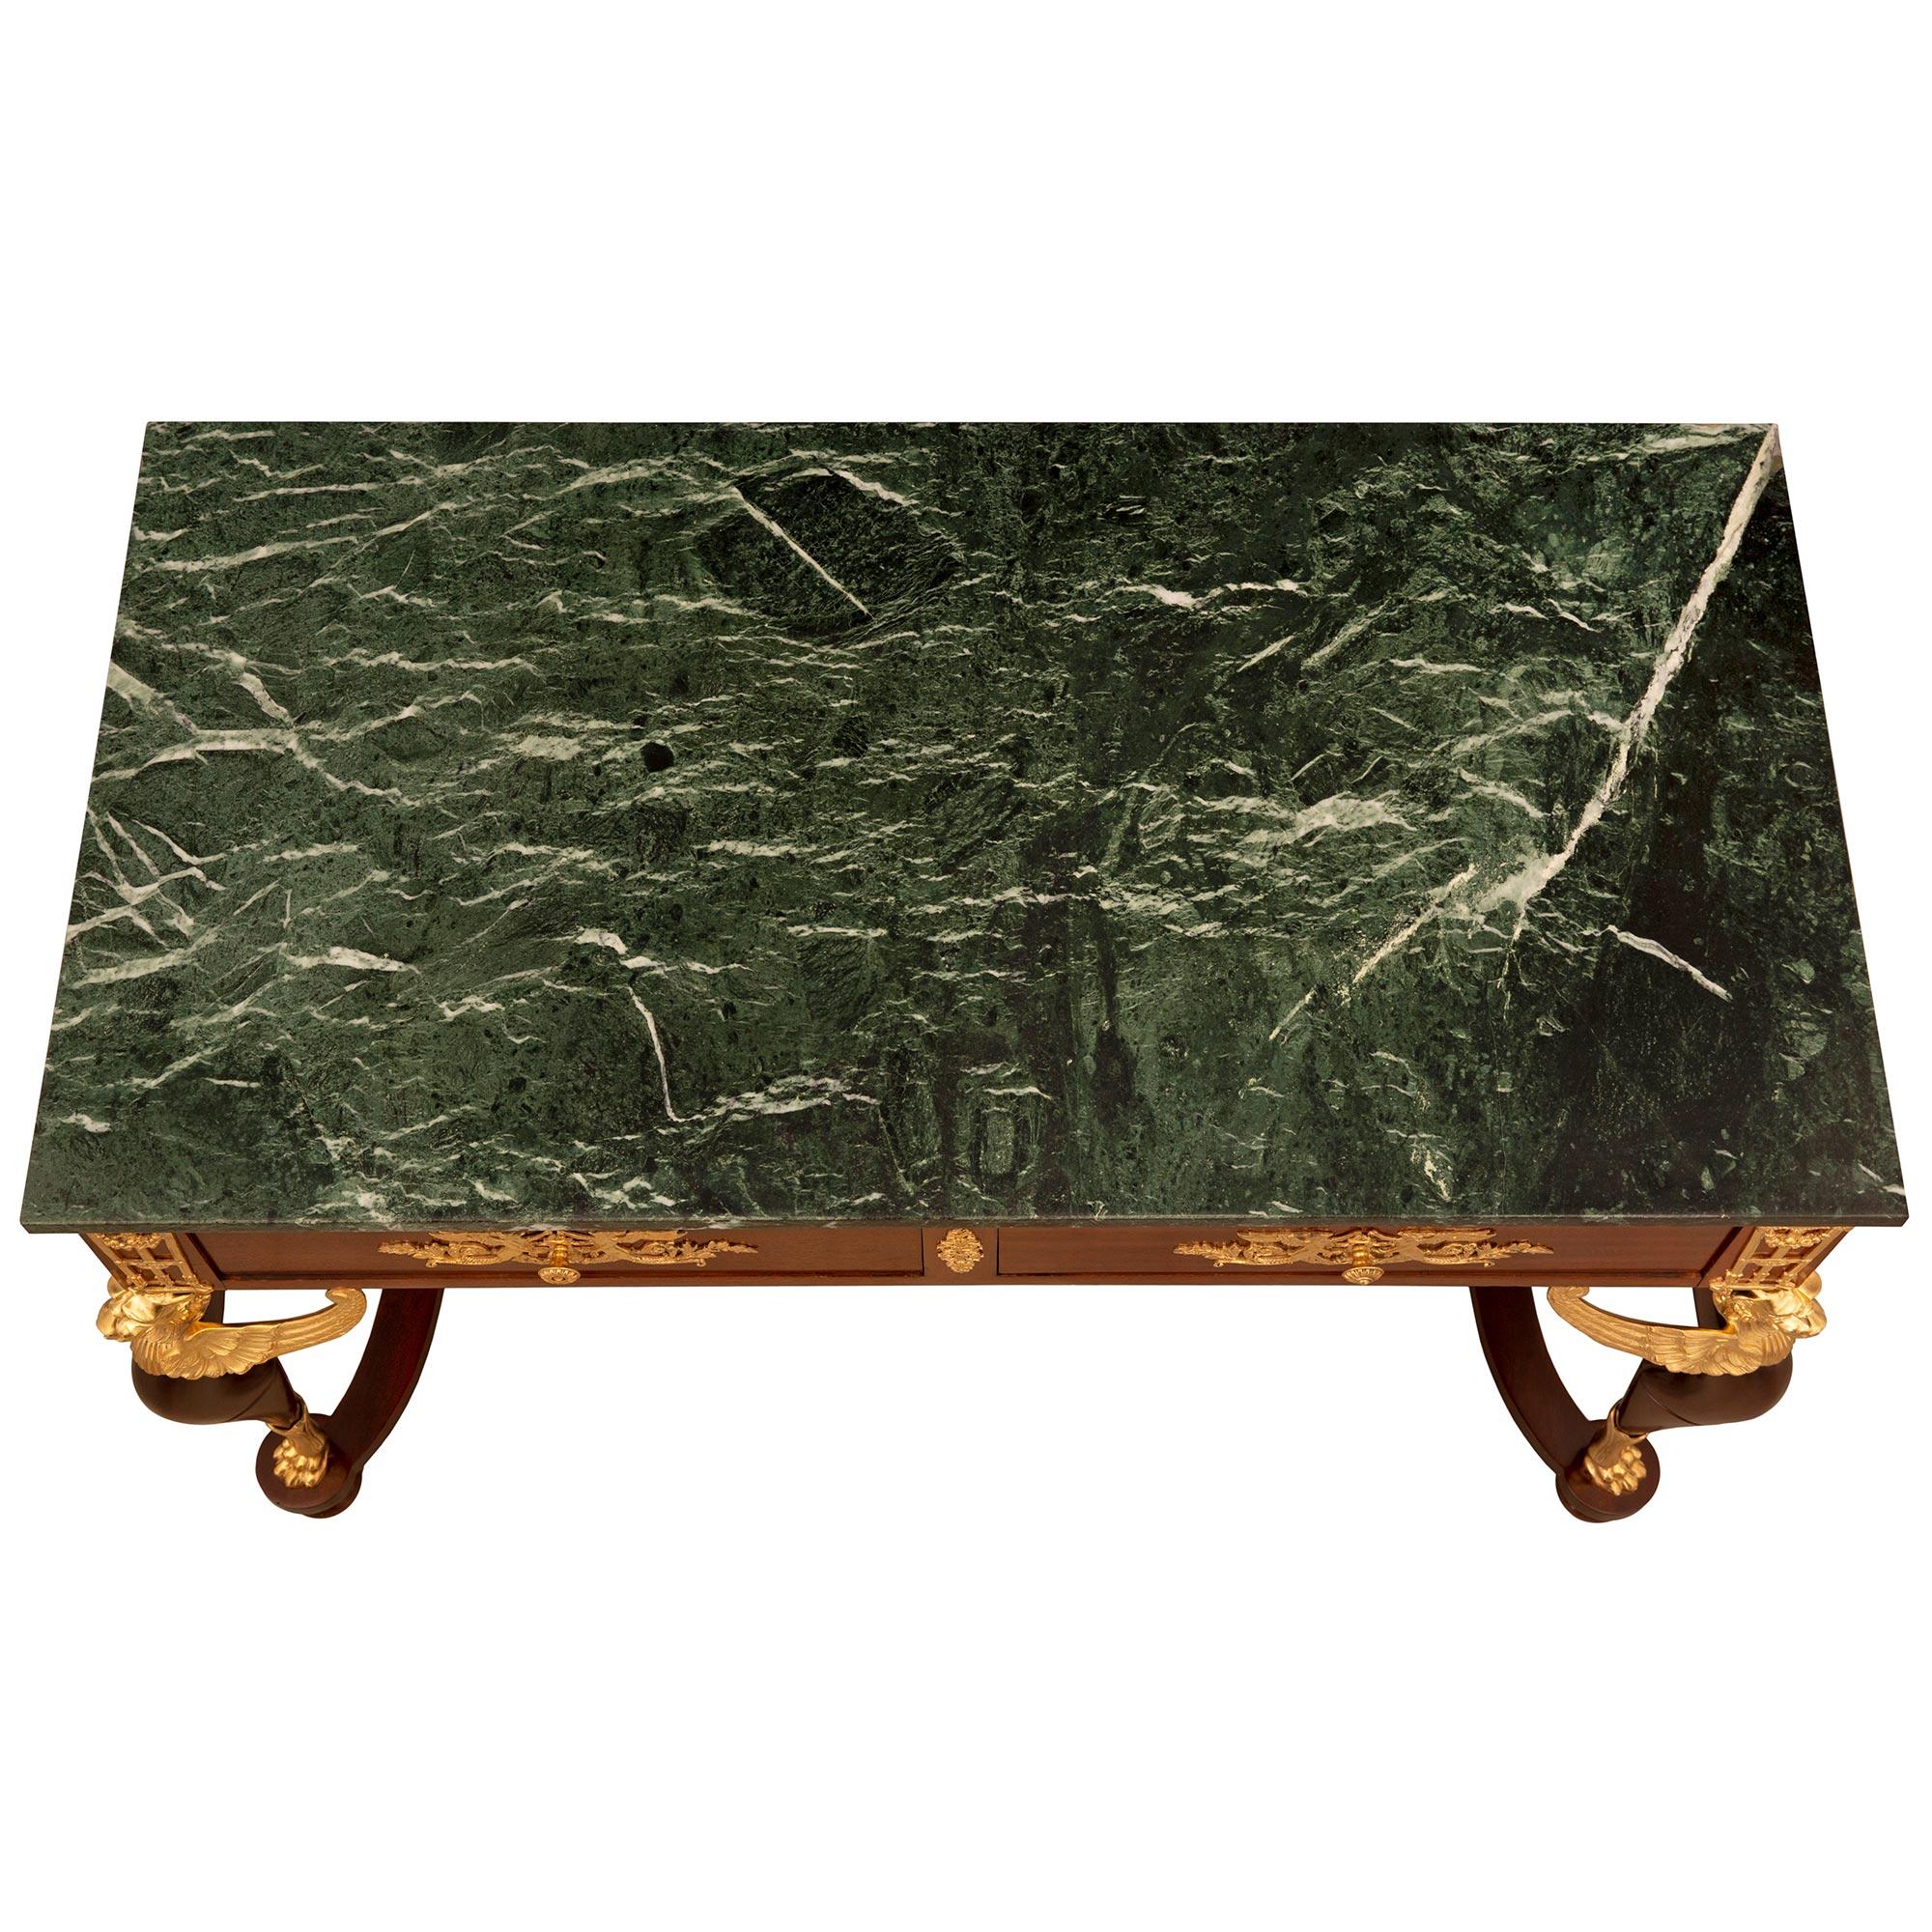 Ein hübscher und beeindruckender französischer Empire-Tisch aus dem 19. Jahrhundert aus Mahagoni, Ormolu und Vert de Patricia-Marmor. Der rechteckige Tisch mit zwei Schubladen wird von geschwungenen, aussagekräftigen Beinen getragen, die ein